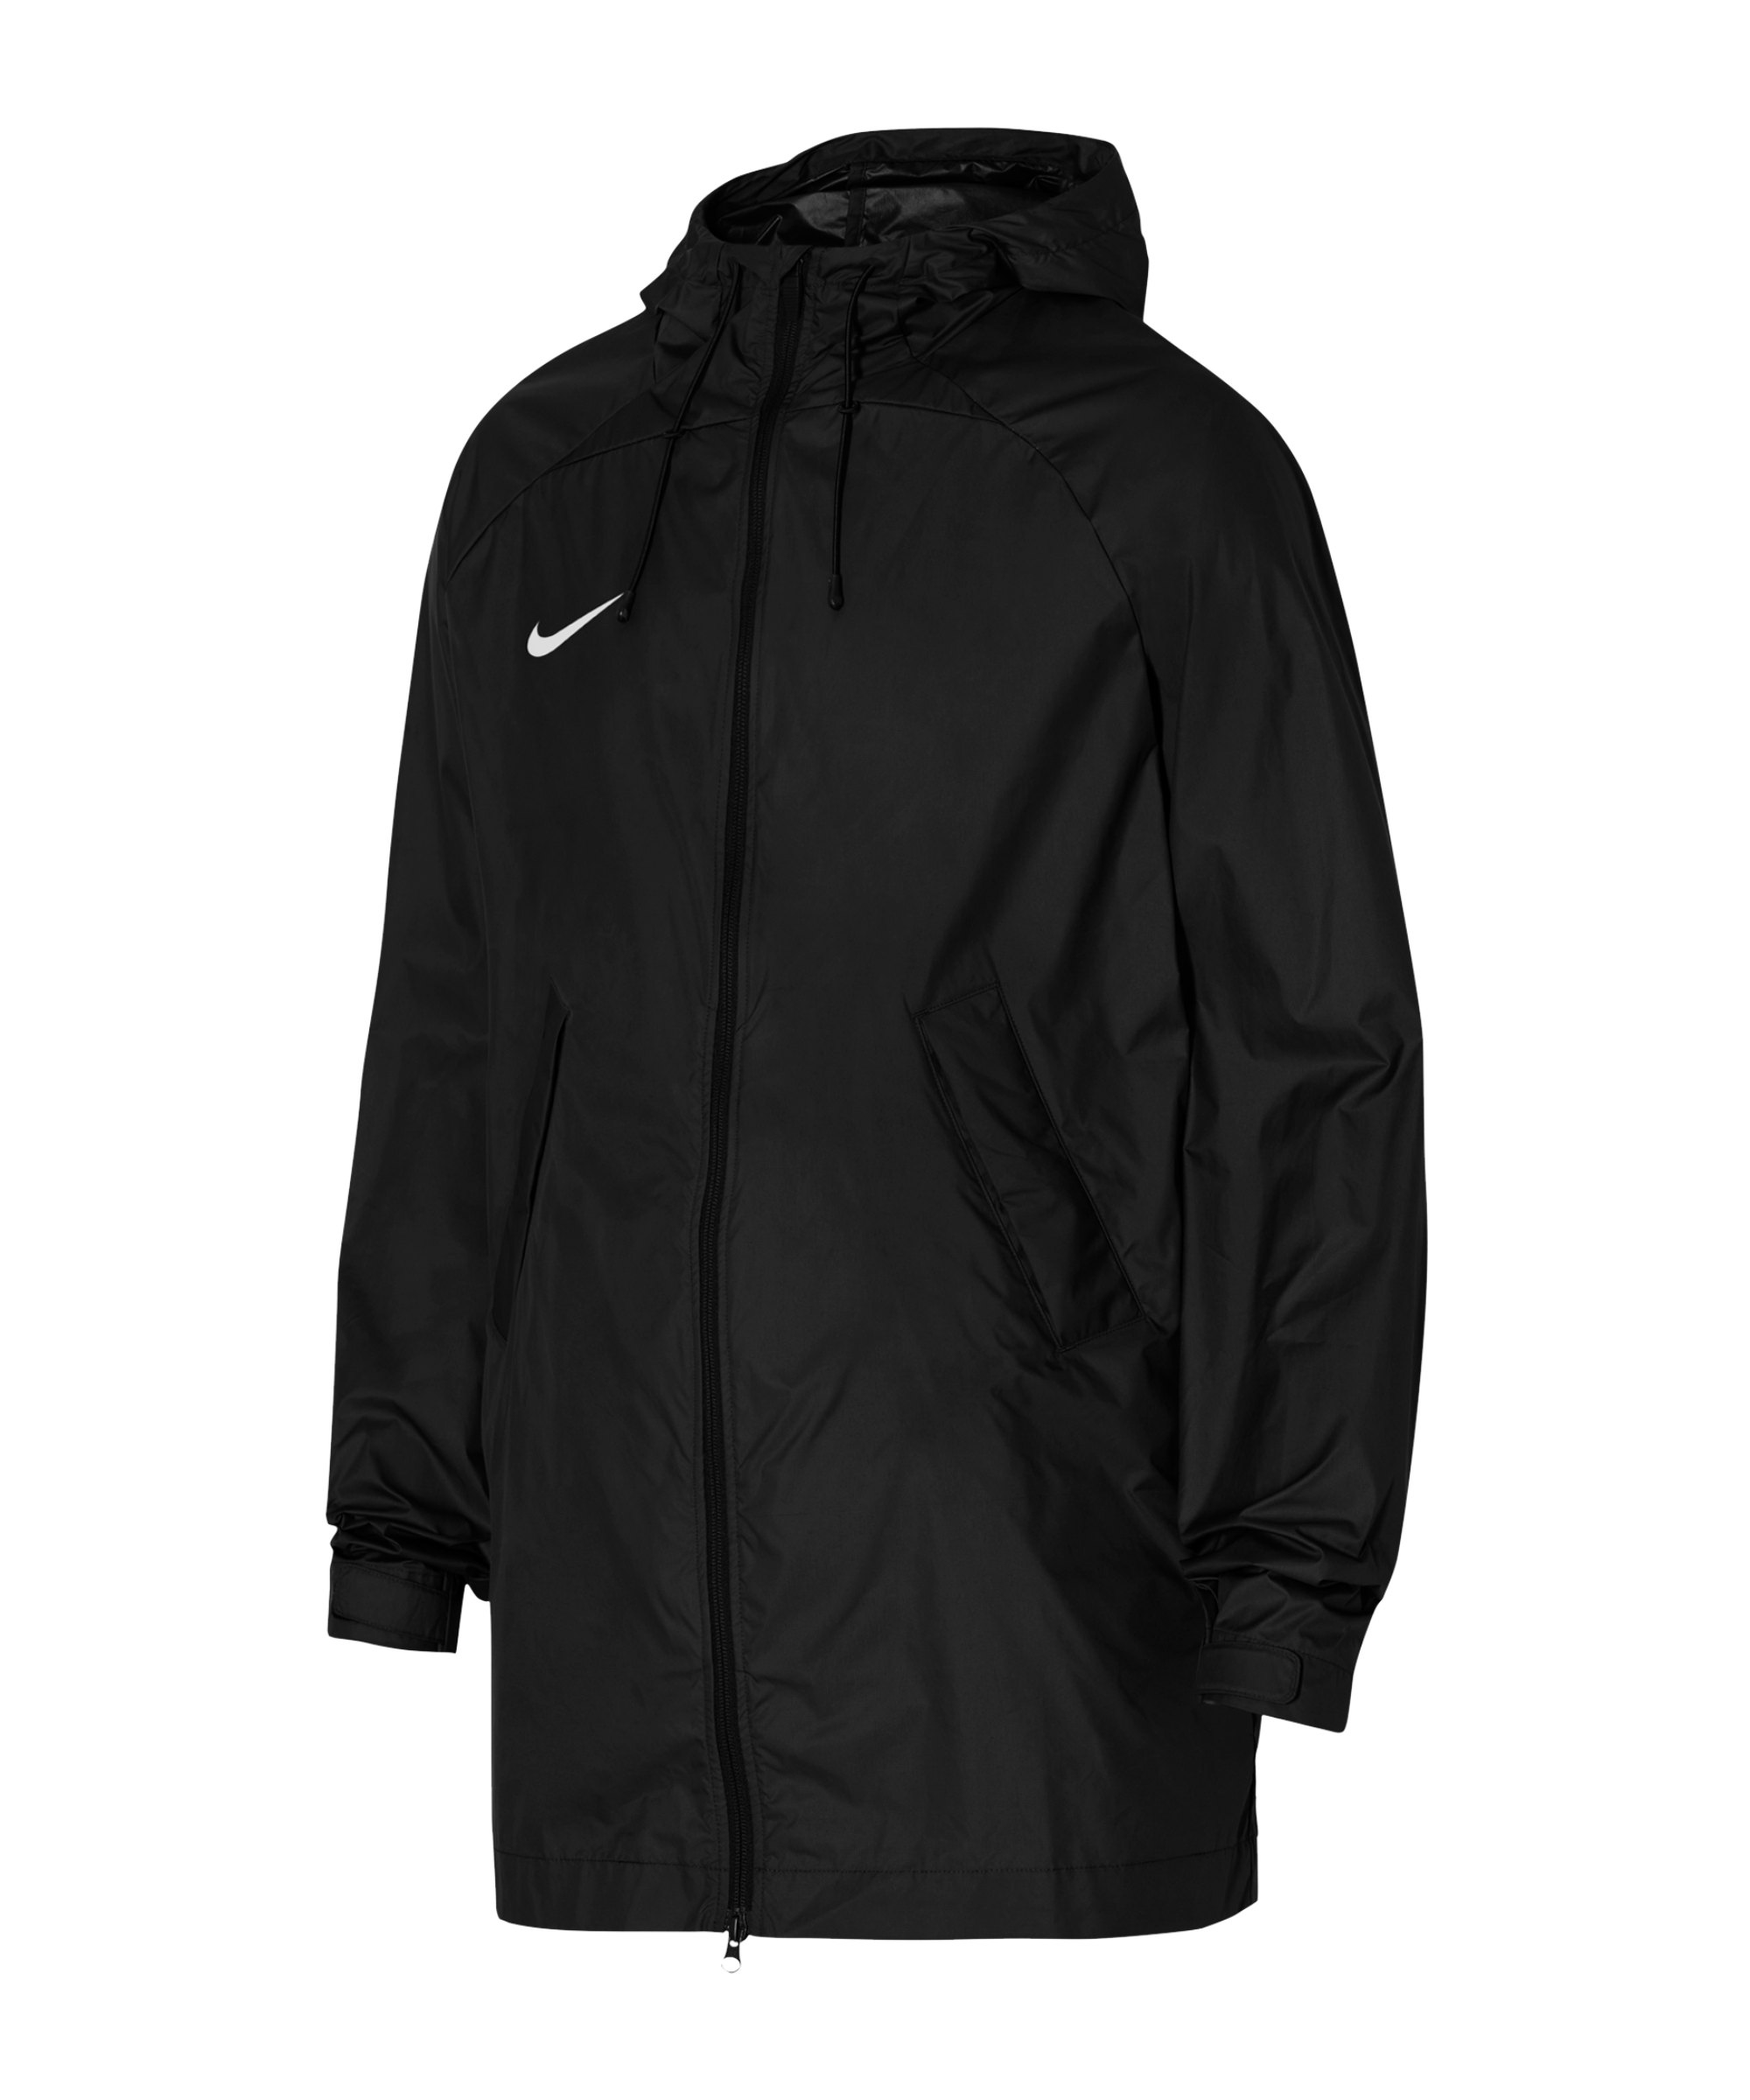 Nike Academy Pro Storm Kapuzenjacke Damen F010 - schwarz